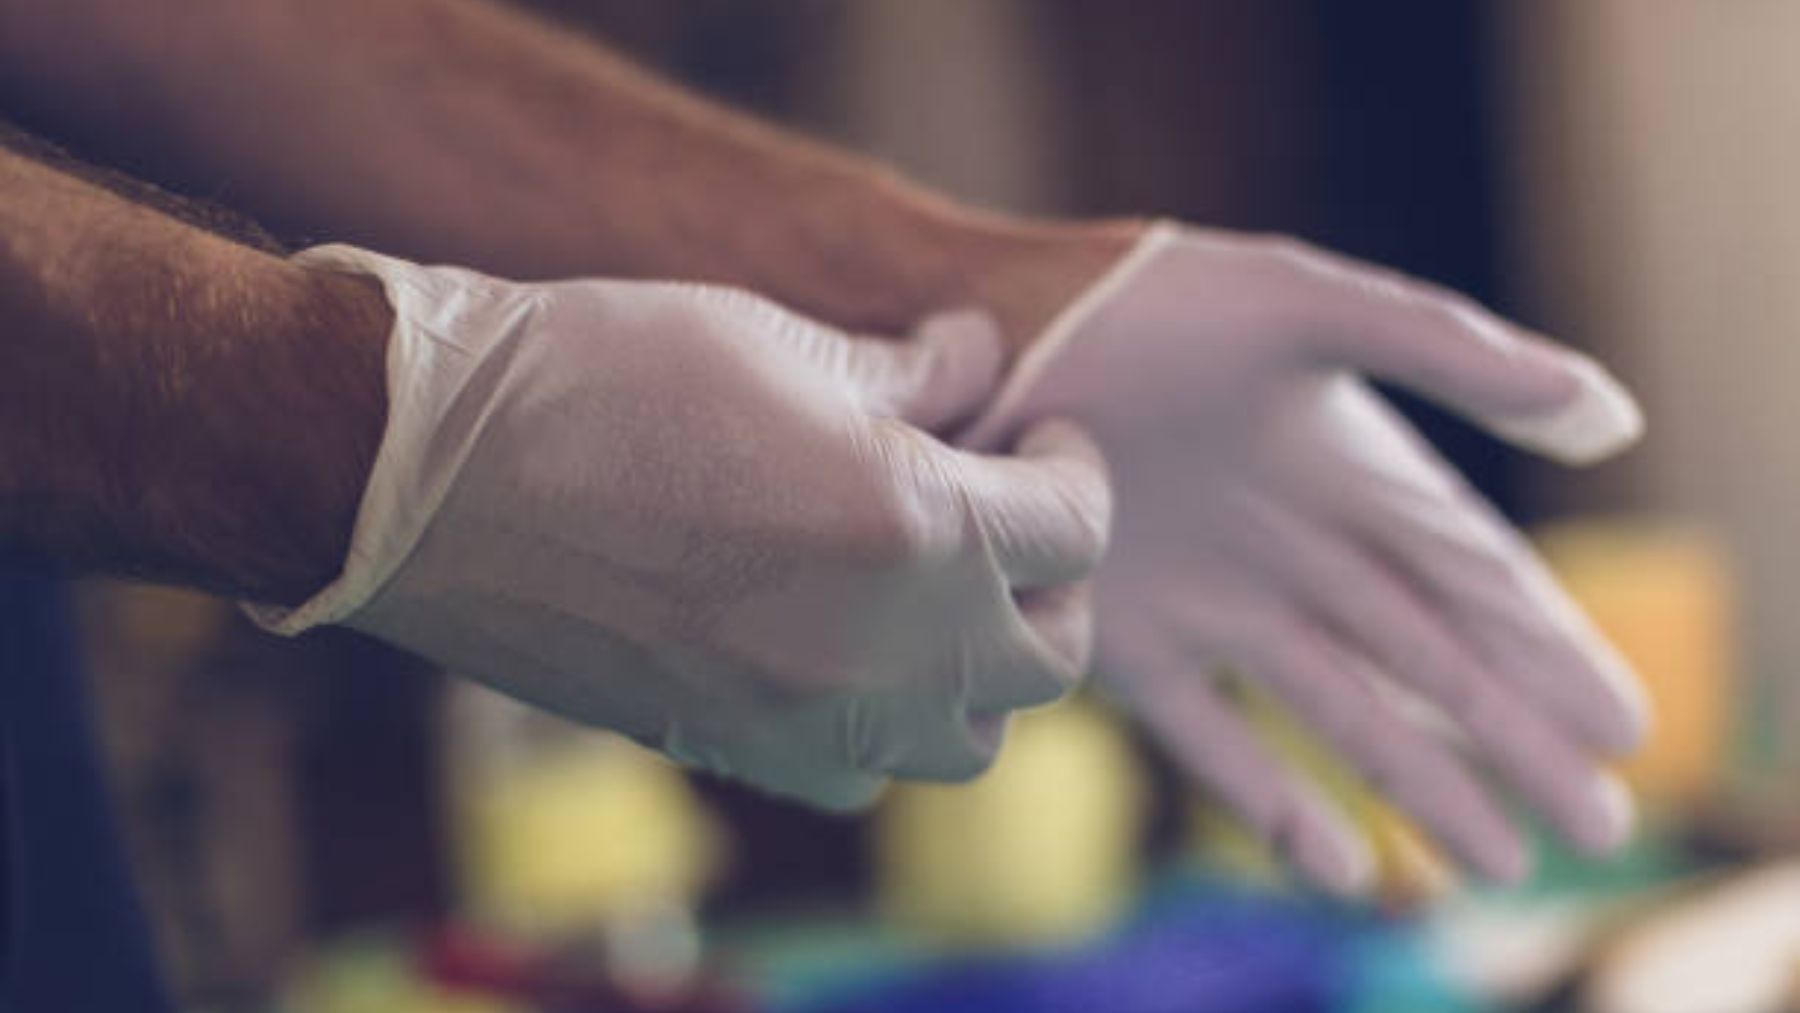 Descubre como se originaron los guantes quirúrgicos